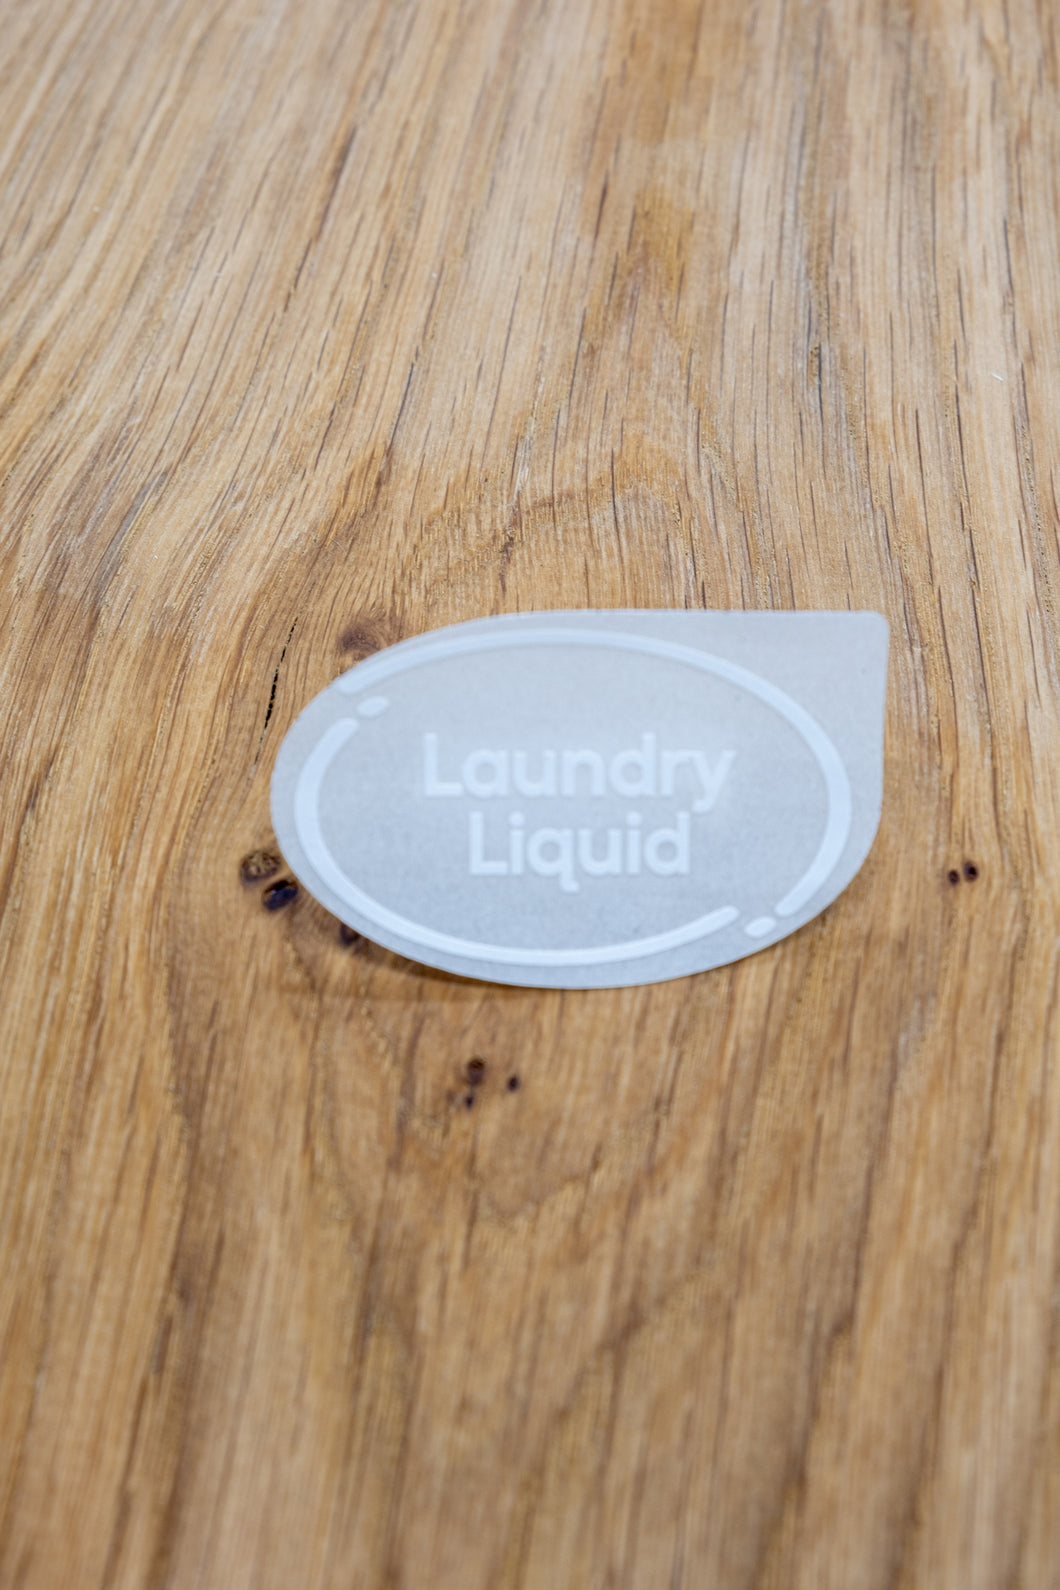 Laundry Liquid Label